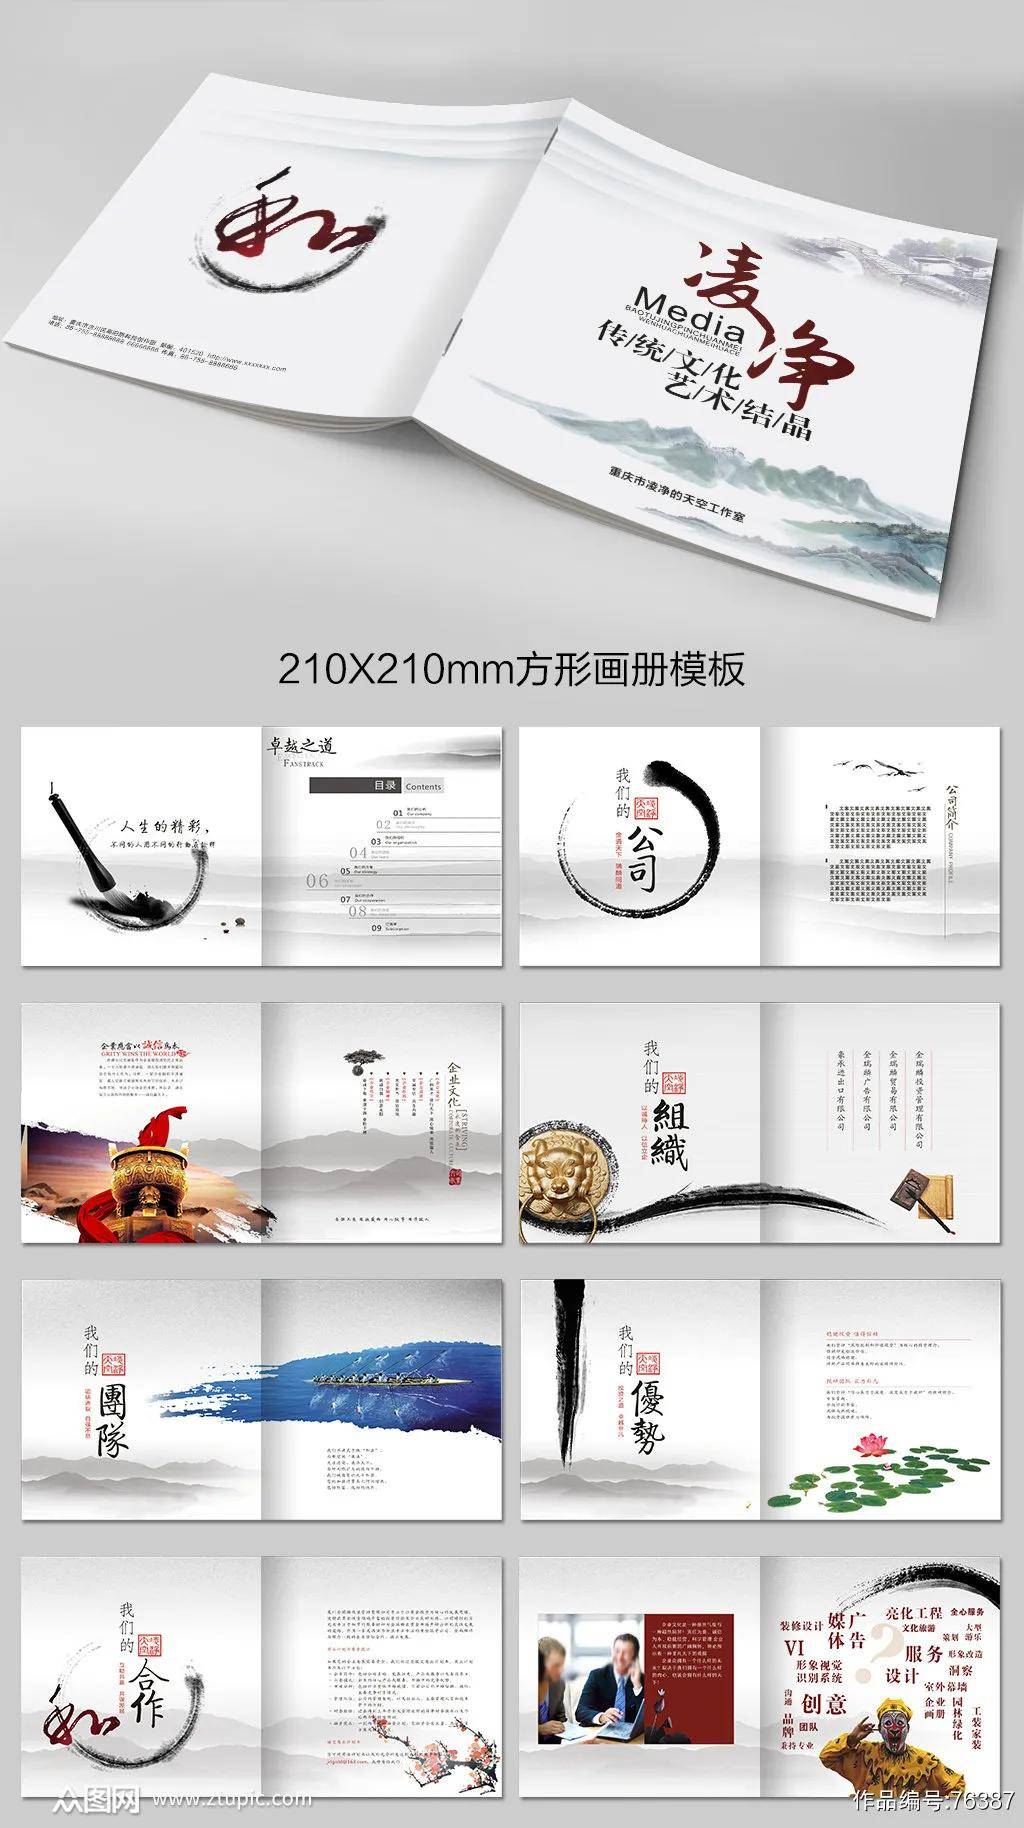 中国风宣传册画册设计模板模版素材psd格式